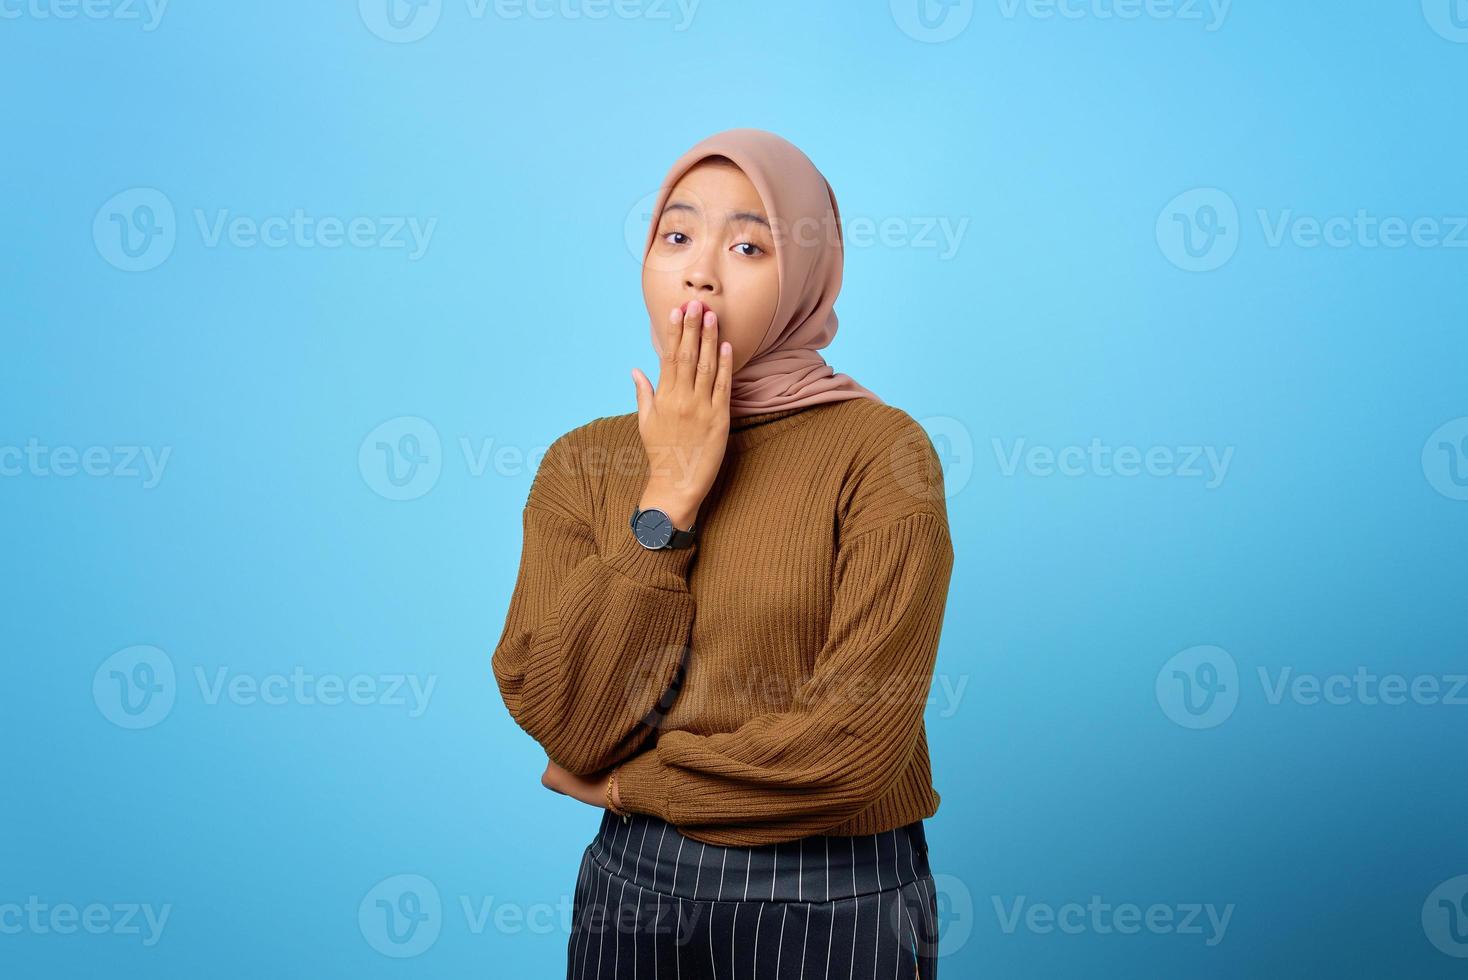 jonge aziatische vrouw geeuwen moe die mond bedekt met hand op blauwe achtergrond foto